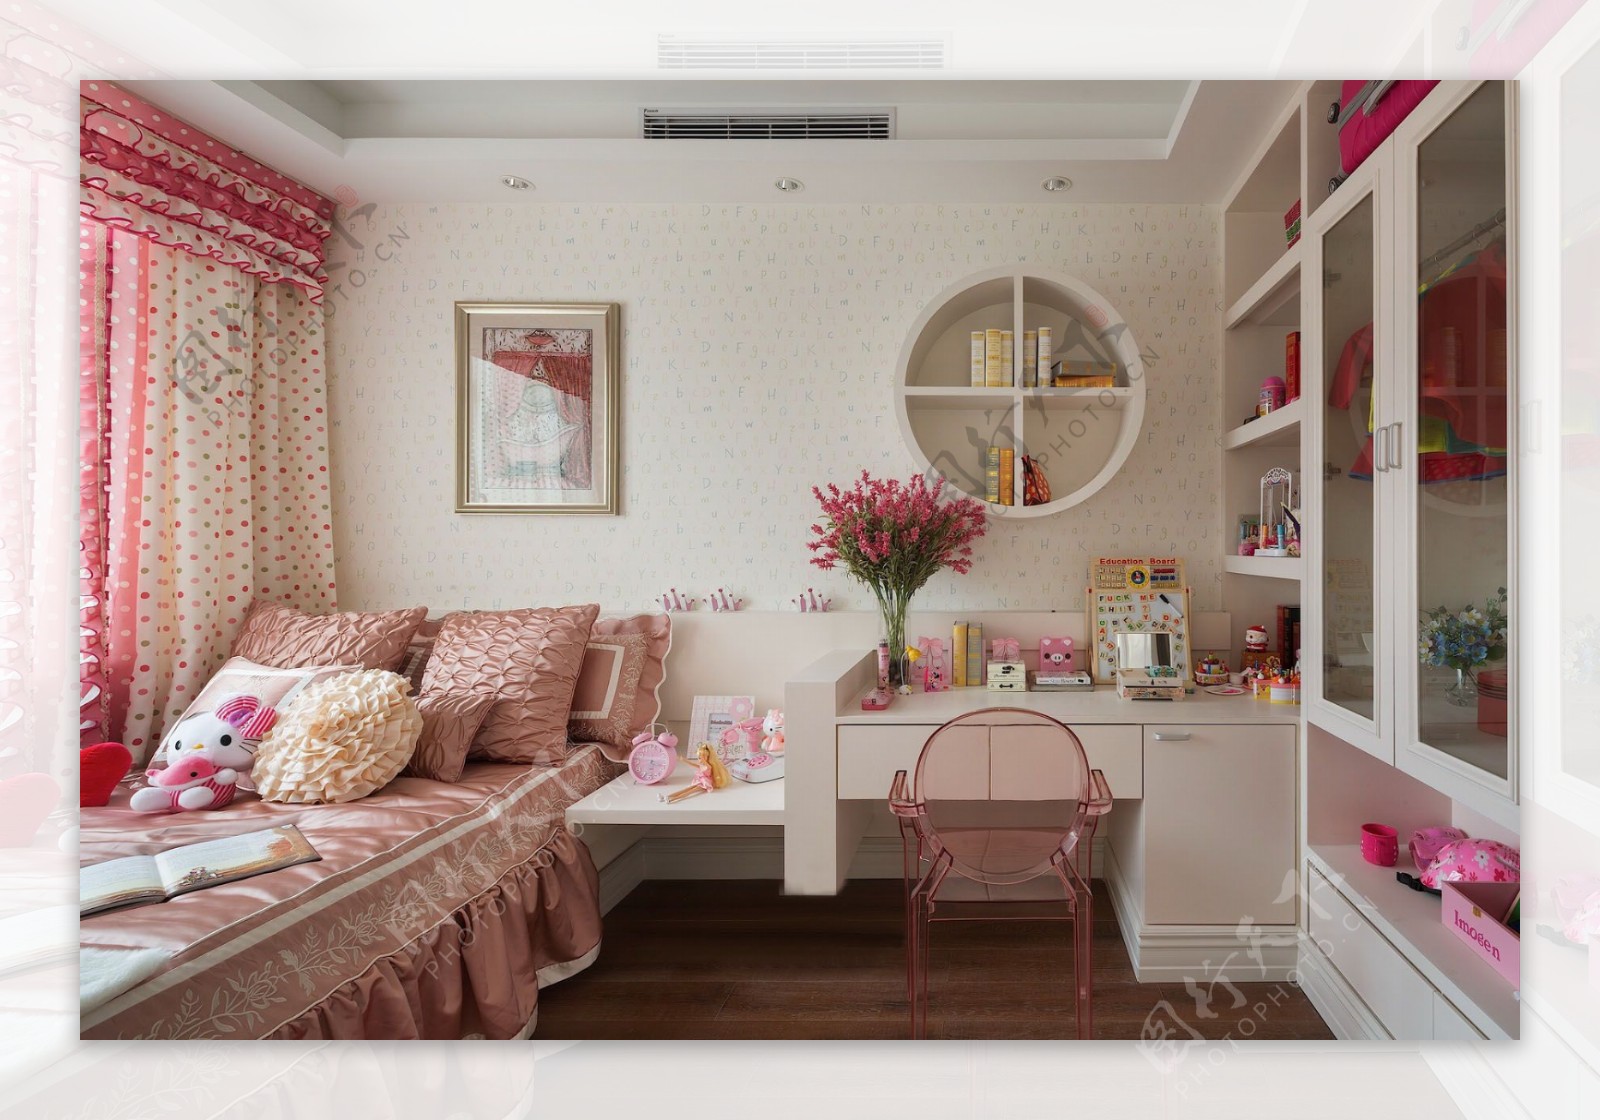 现代粉嫩卧室粉白窗帘室内装修效果图